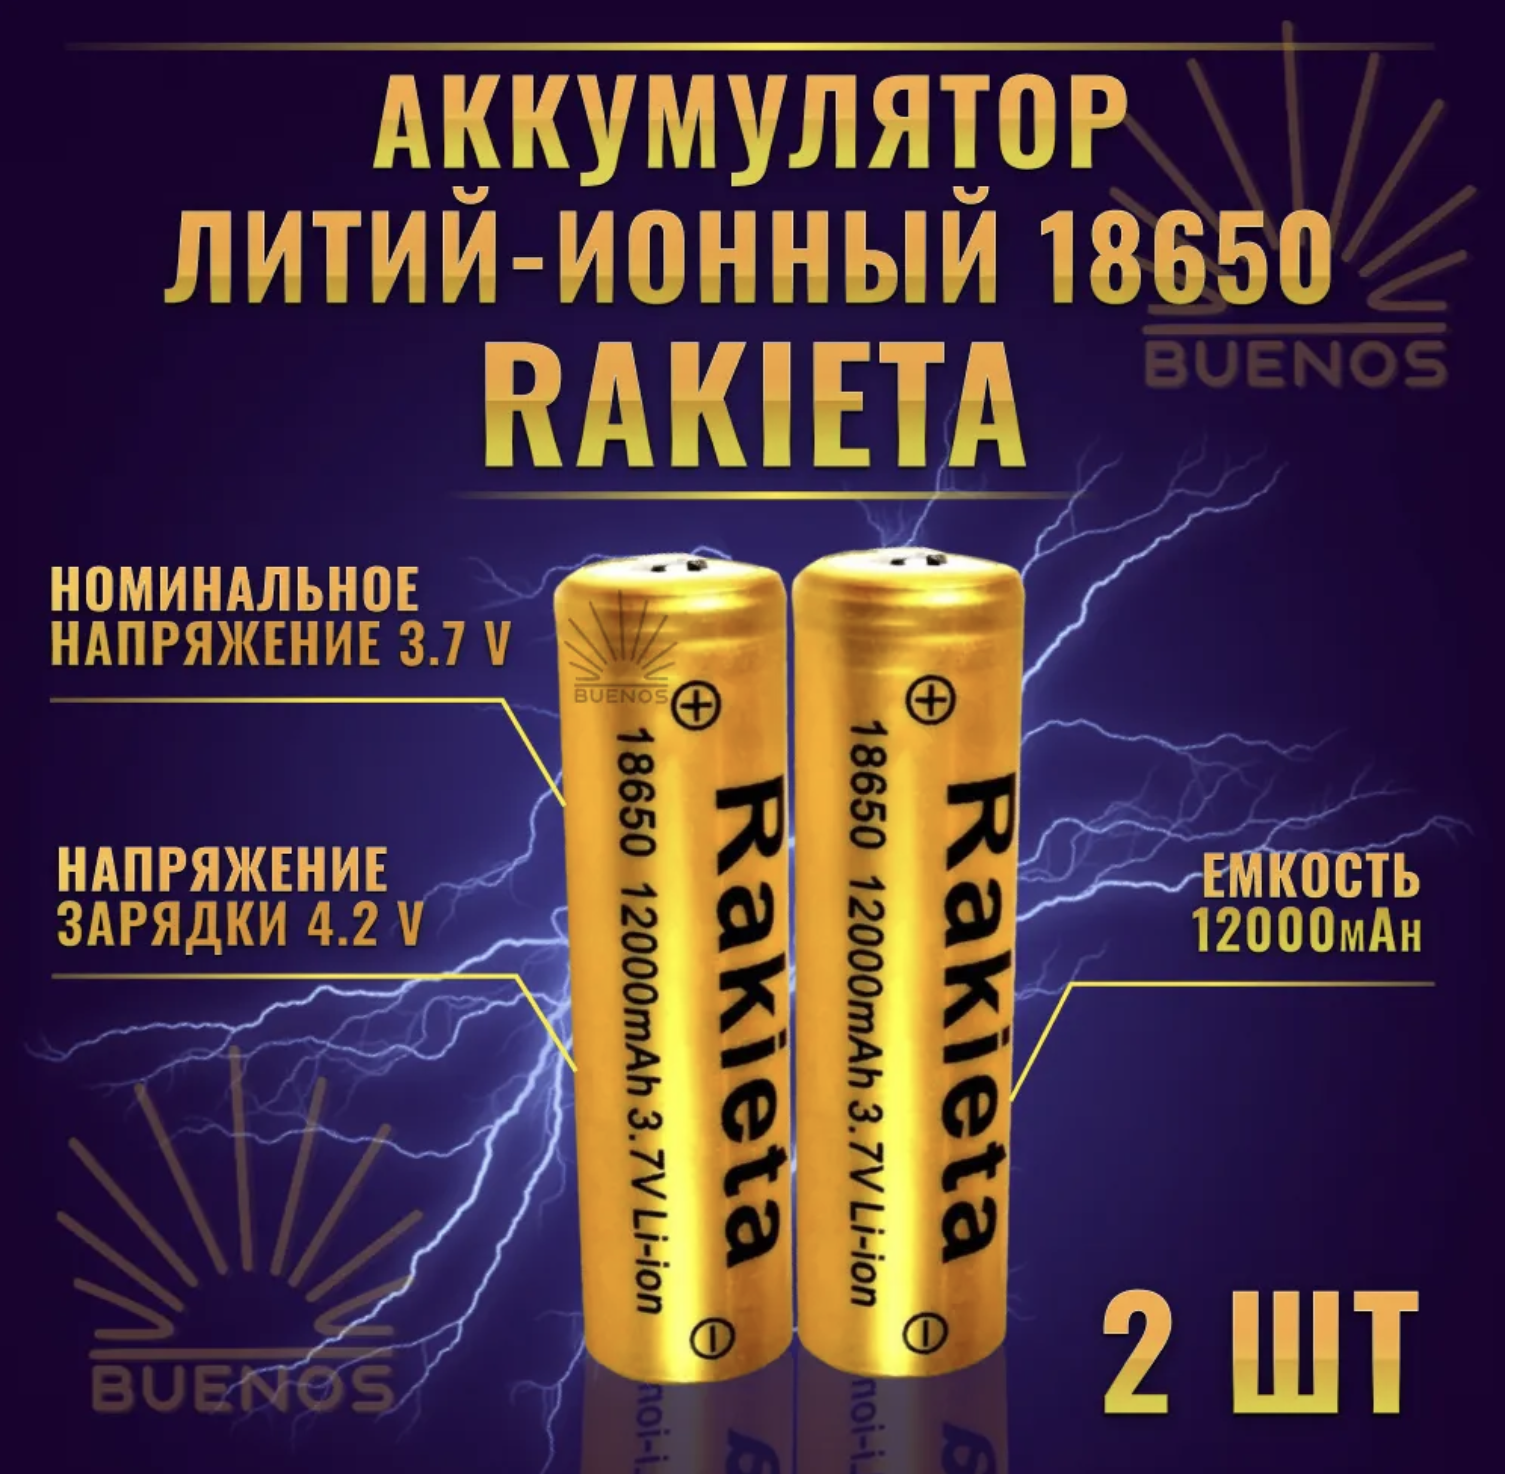 Батарейки аккумуляторные универсальные 2 шт Rakeita, 18650,3.7V 12000 mAh Li-ion